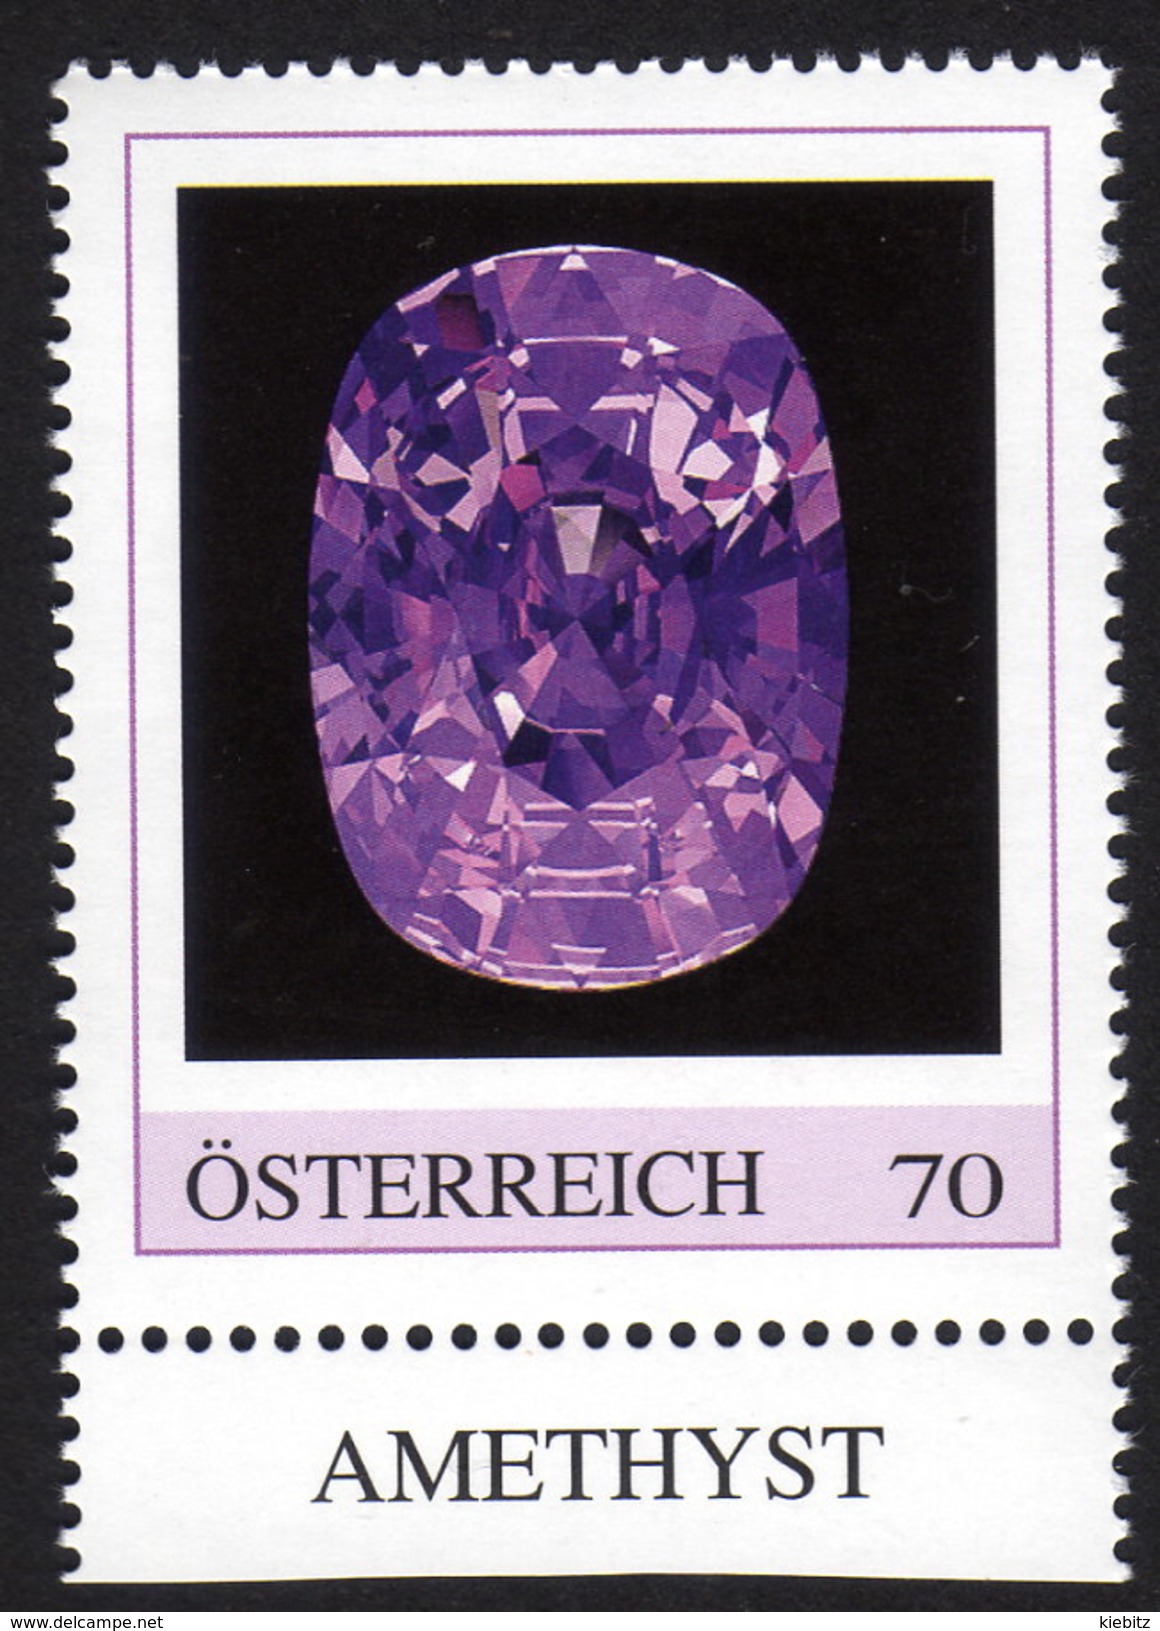 ÖSTERREICH 2015 ** AMETHYST - Edelstein, Mineralien - PM Personalized Stamp MNH - Mineralien